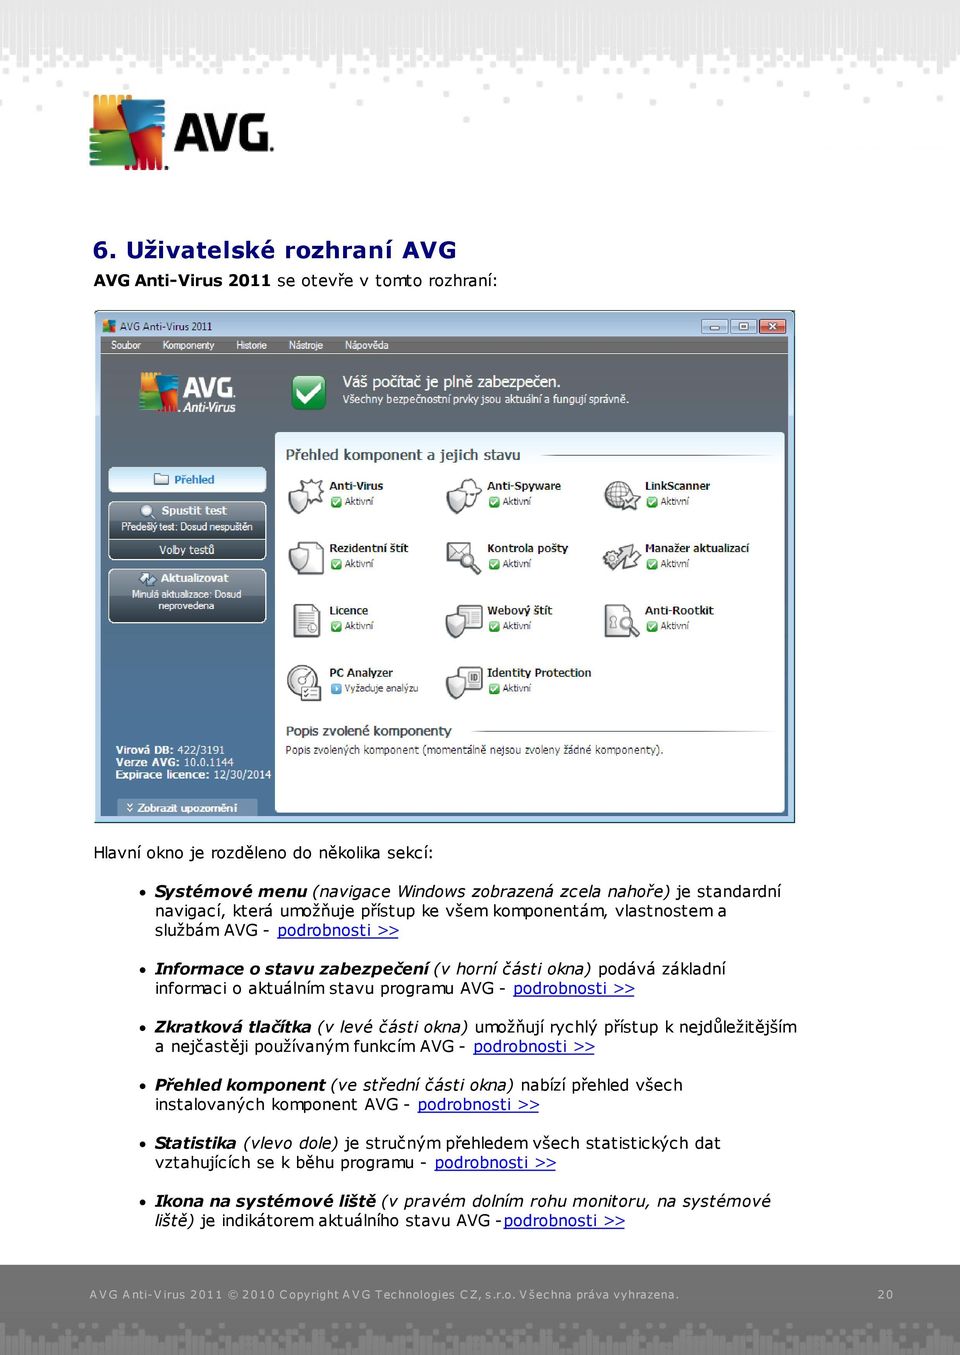 programu AVG - podrobnosti >> Zkratková tlačítka (v levé části okna) umožňují rychlý přístup k nejdůležitějším a nejčastěji používaným funkcím AVG - podrobnosti >> Přehled komponent (ve střední části